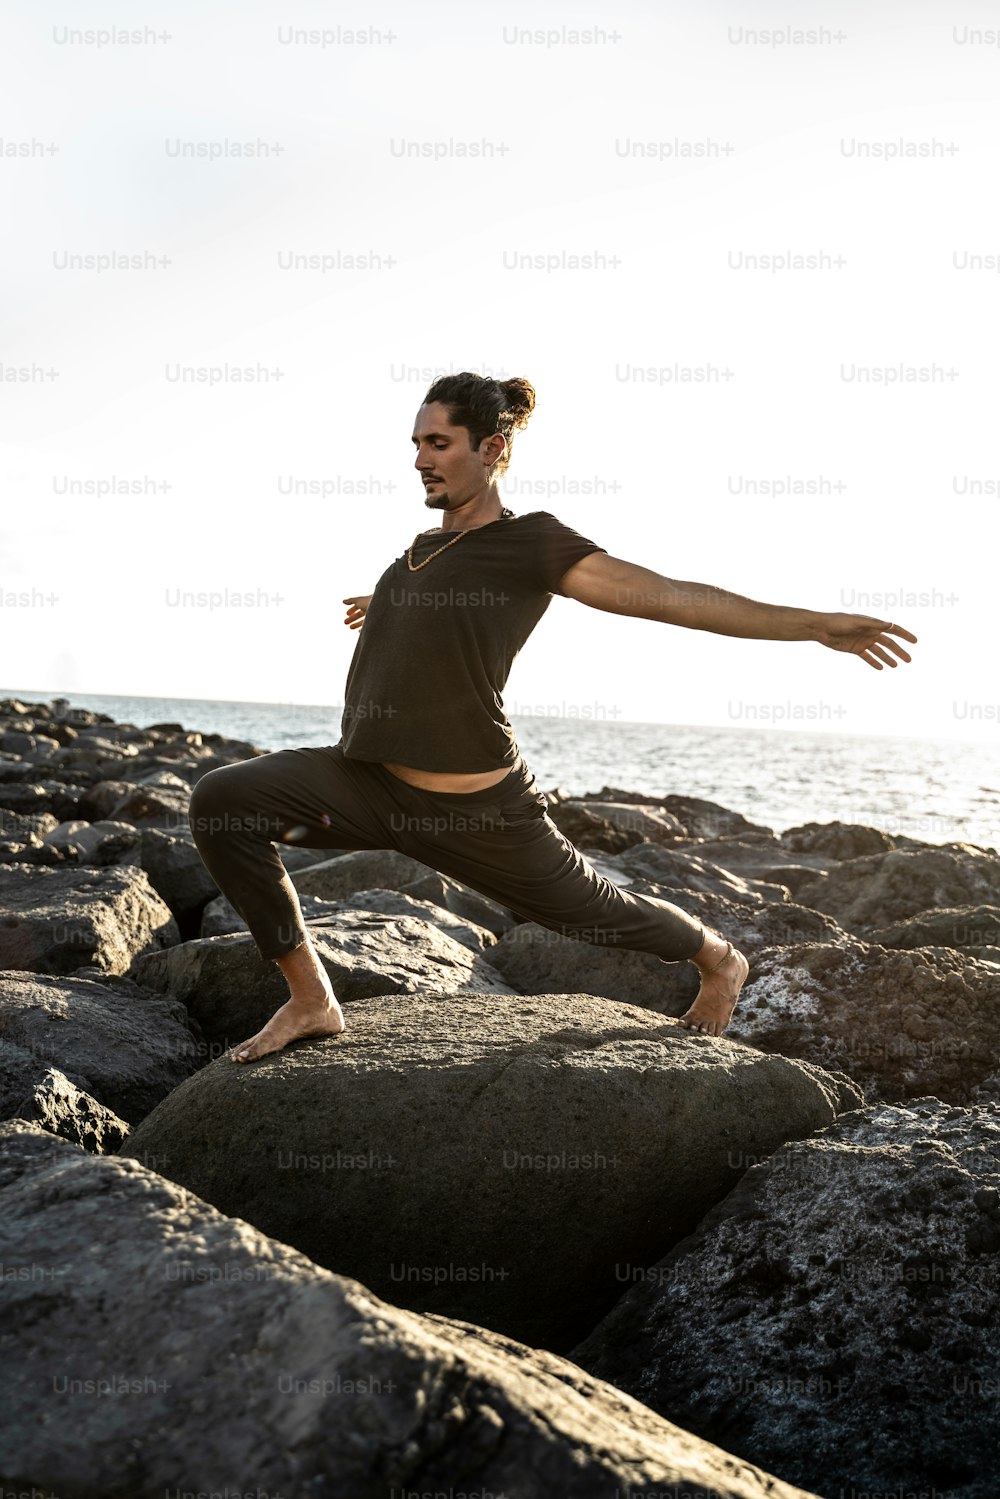 Bonito professor de yoga está praticando nas rochas, hora do pôr do sol. Homem se exercitando, alongando o corpo. Pranayama. Mindfulness. Meditação.